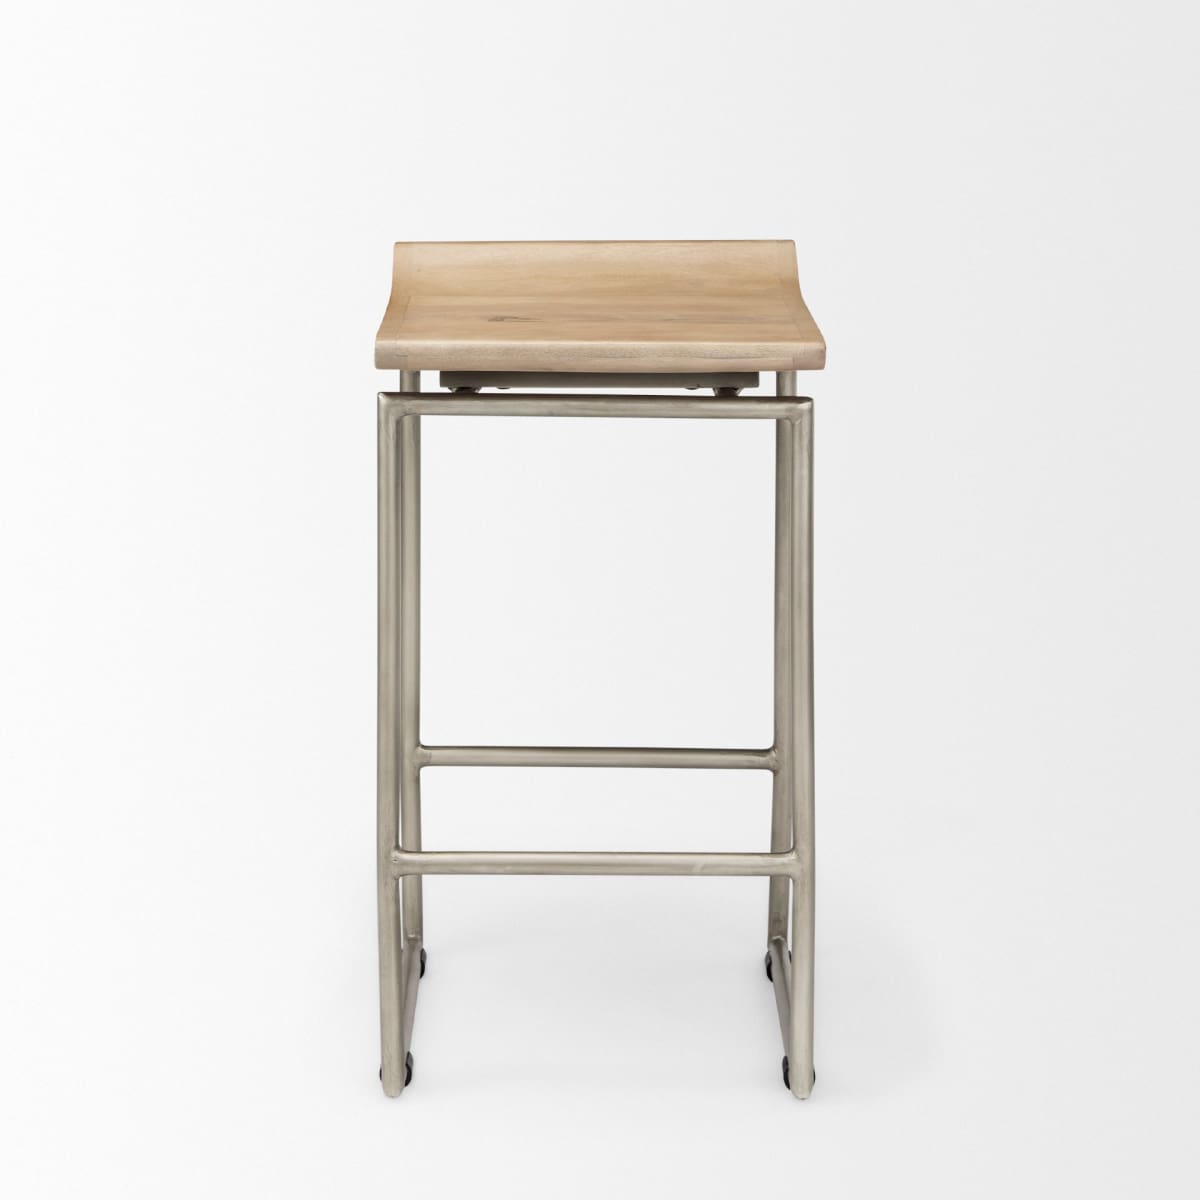 Givens Bar Counter Stool Brown Wood | Silver Metal | Counter - bar-stools